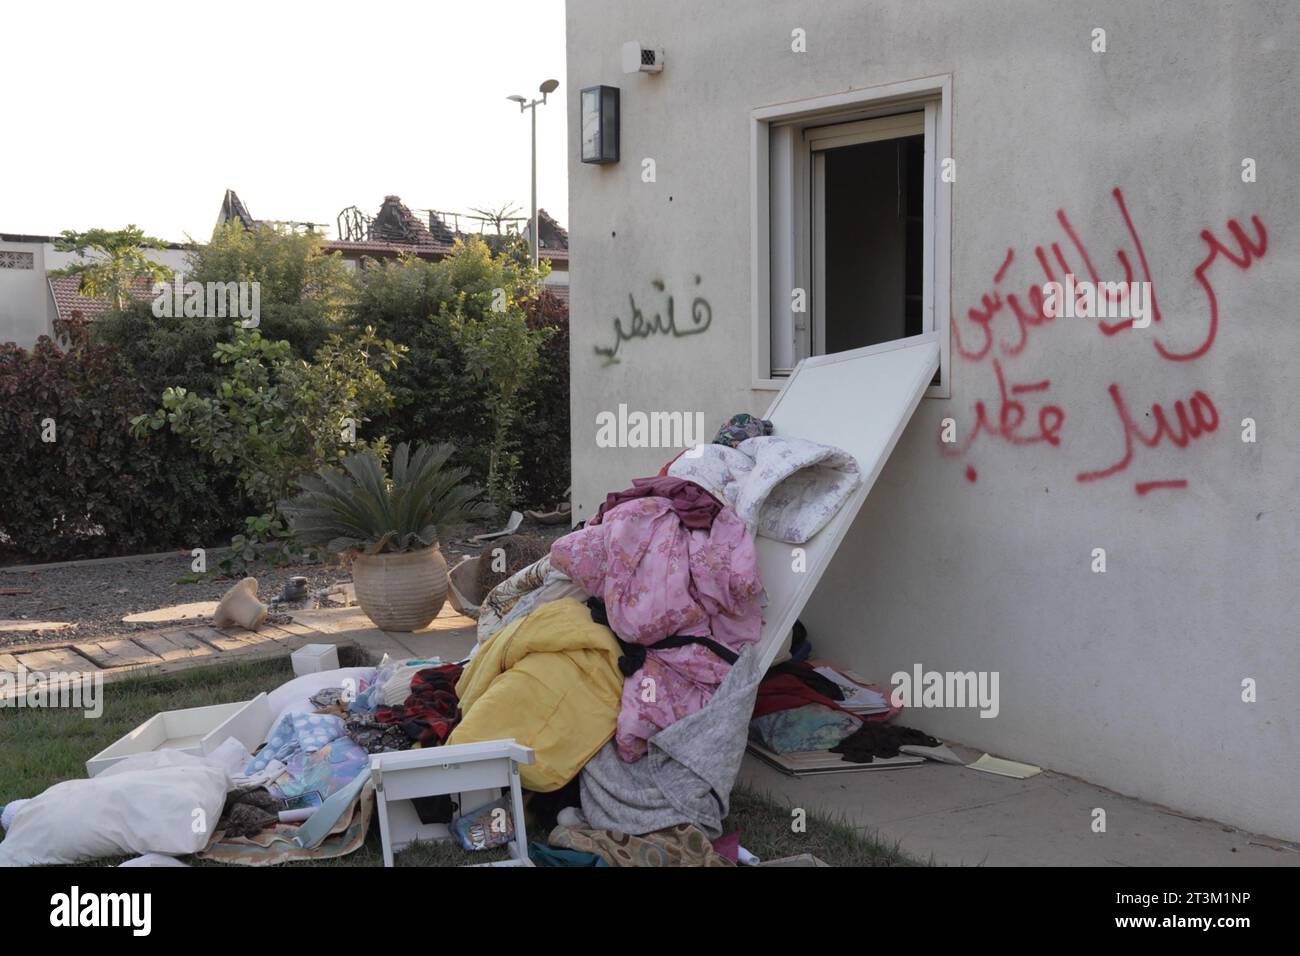 Escrito en árabe dejado por militantes palestinos de las brigadas Al-Quds El brazo armado de la organización islamista palestina Jihad fue manchado frente a una casa durante el ataque del 7 de octubre de los militantes palestinos de Hamás en el kibutz Beeri, cerca de la frontera con Gaza, el 17 de octubre de 2023 en Be'eri, Israel. A raíz de los ataques del 7 de octubre de Hamás que dejaron 1.400 muertos y 200 secuestrados, Israel lanzó un bombardeo sostenido de la Franja de Gaza y amenazó con una invasión terrestre para derrotar al grupo militante que gobierna el territorio palestino. Foto de stock